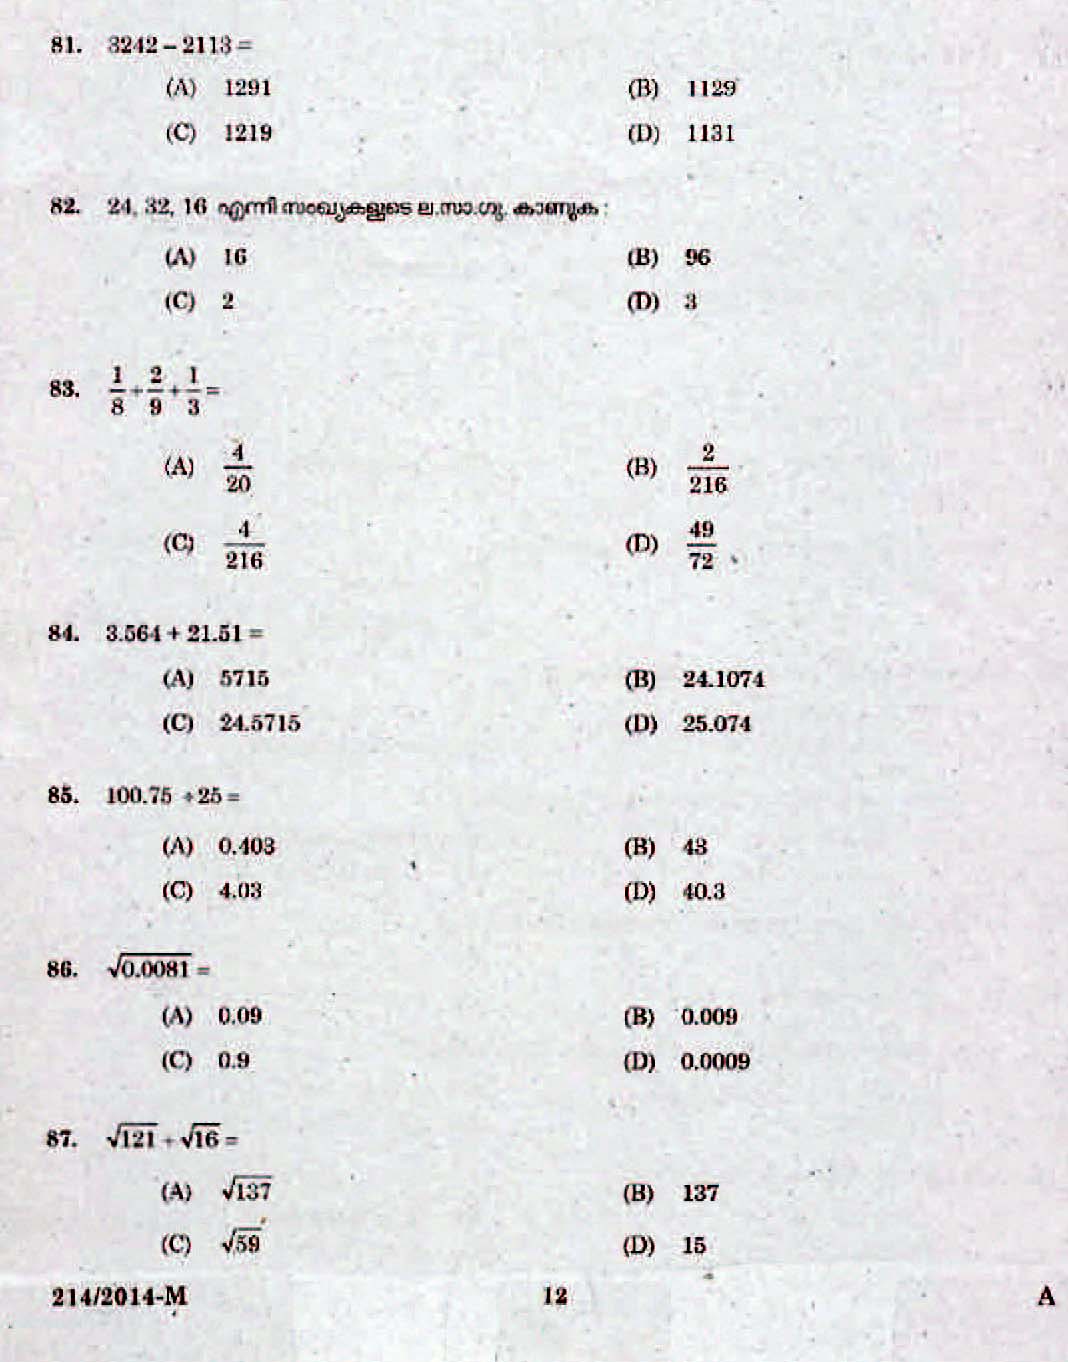 Kerala Last Grade Servants Exam 2014 Question Paper Code 2142014 M 10